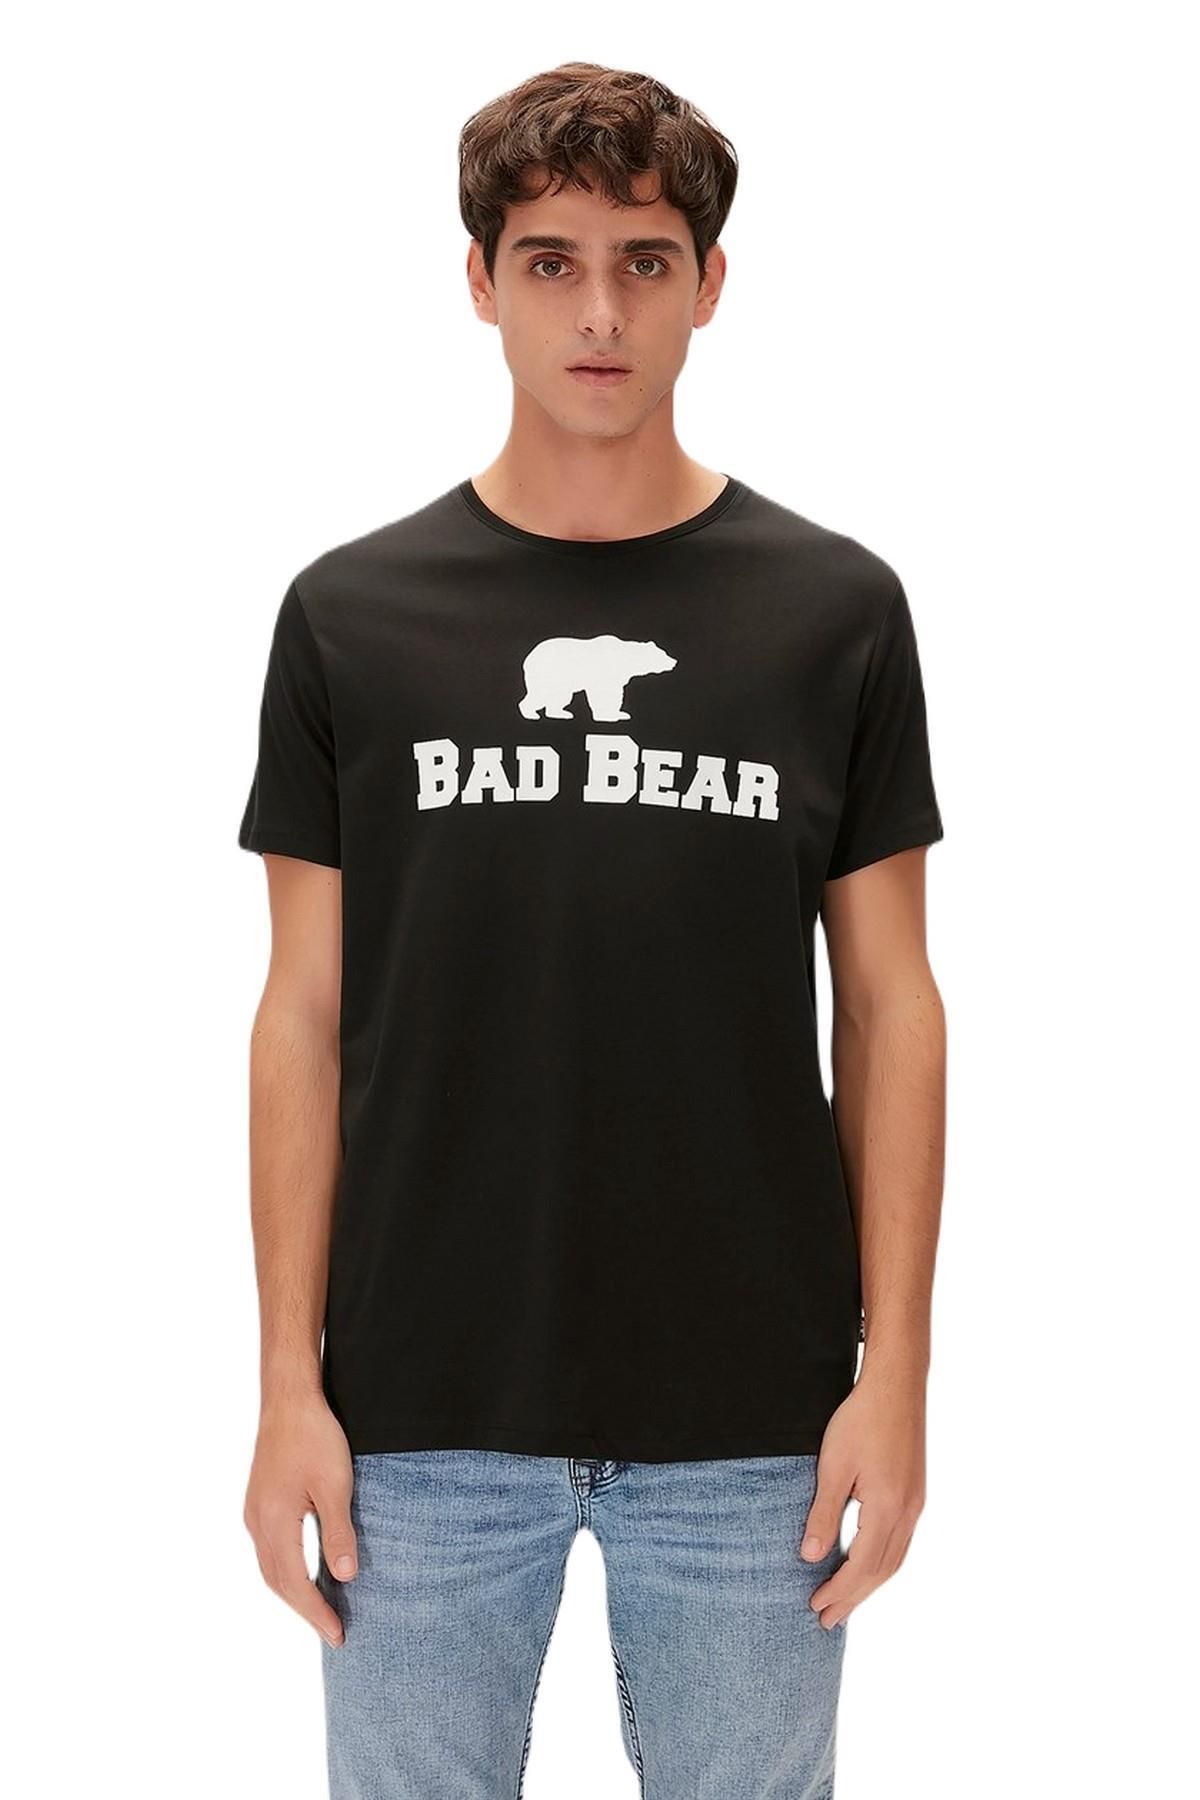 Bad Bear 19.01.07.002-c01 Tee Erkek T-shirt